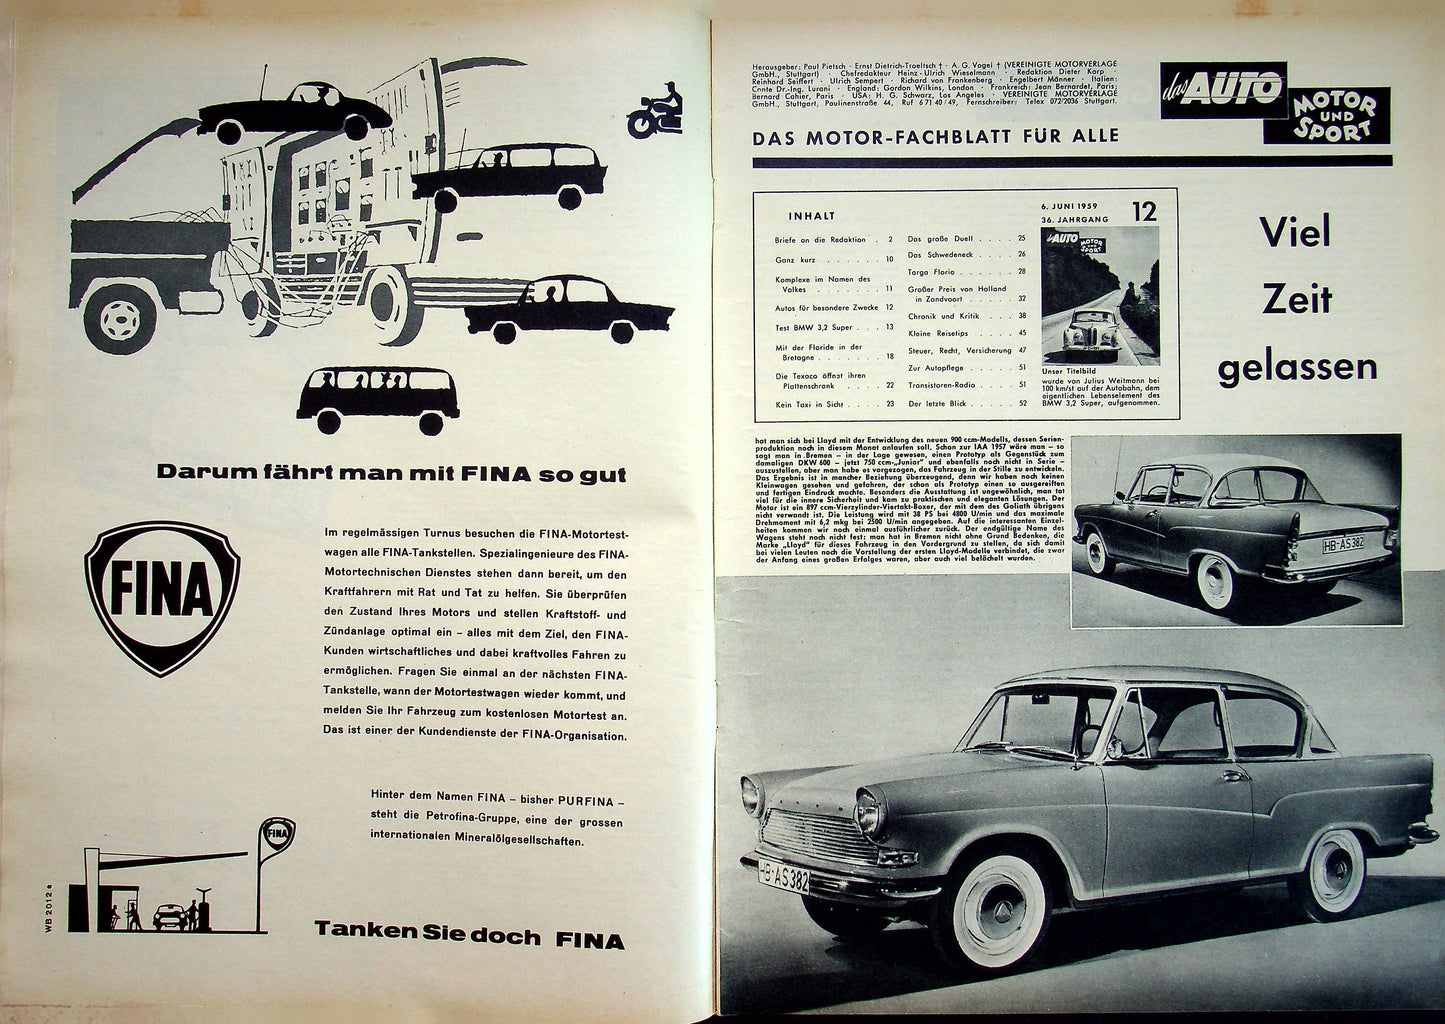 Auto Motor und Sport 12/1959